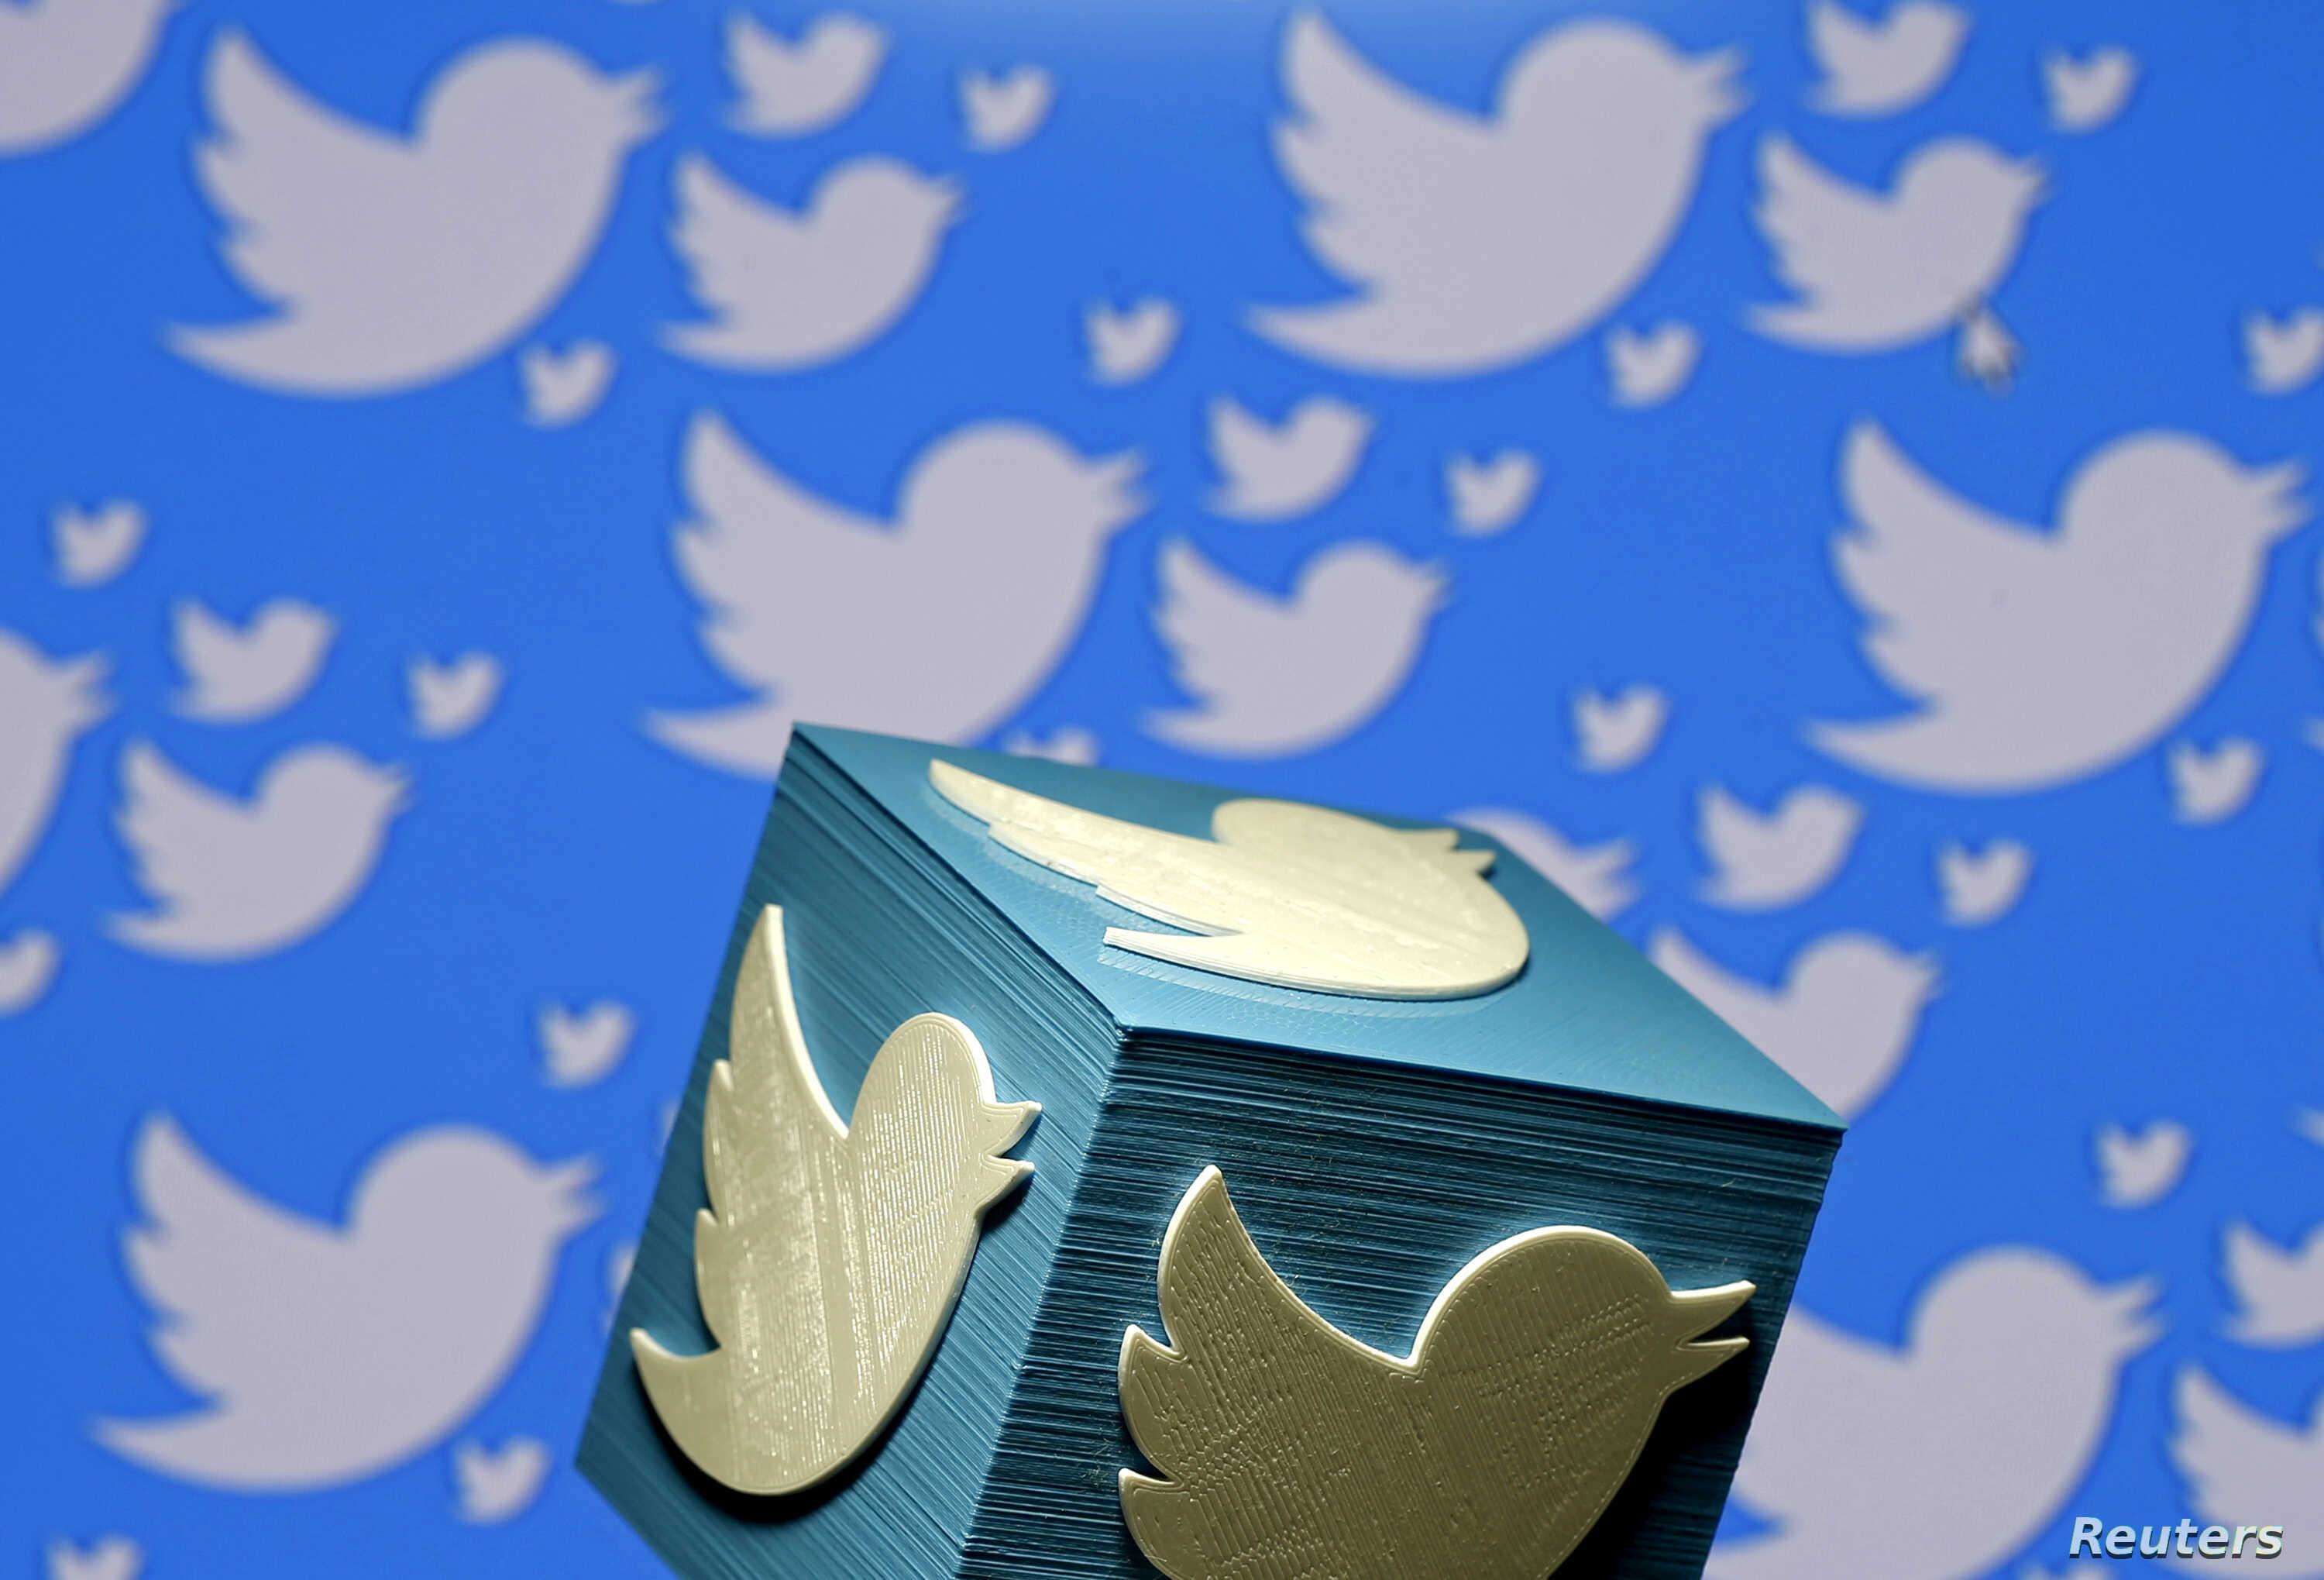 ट्विटर, पेरिस्कोप, तुर्की में Pinterest फेस एडवरटाइजिंग बैन,जानें पूरी खबर